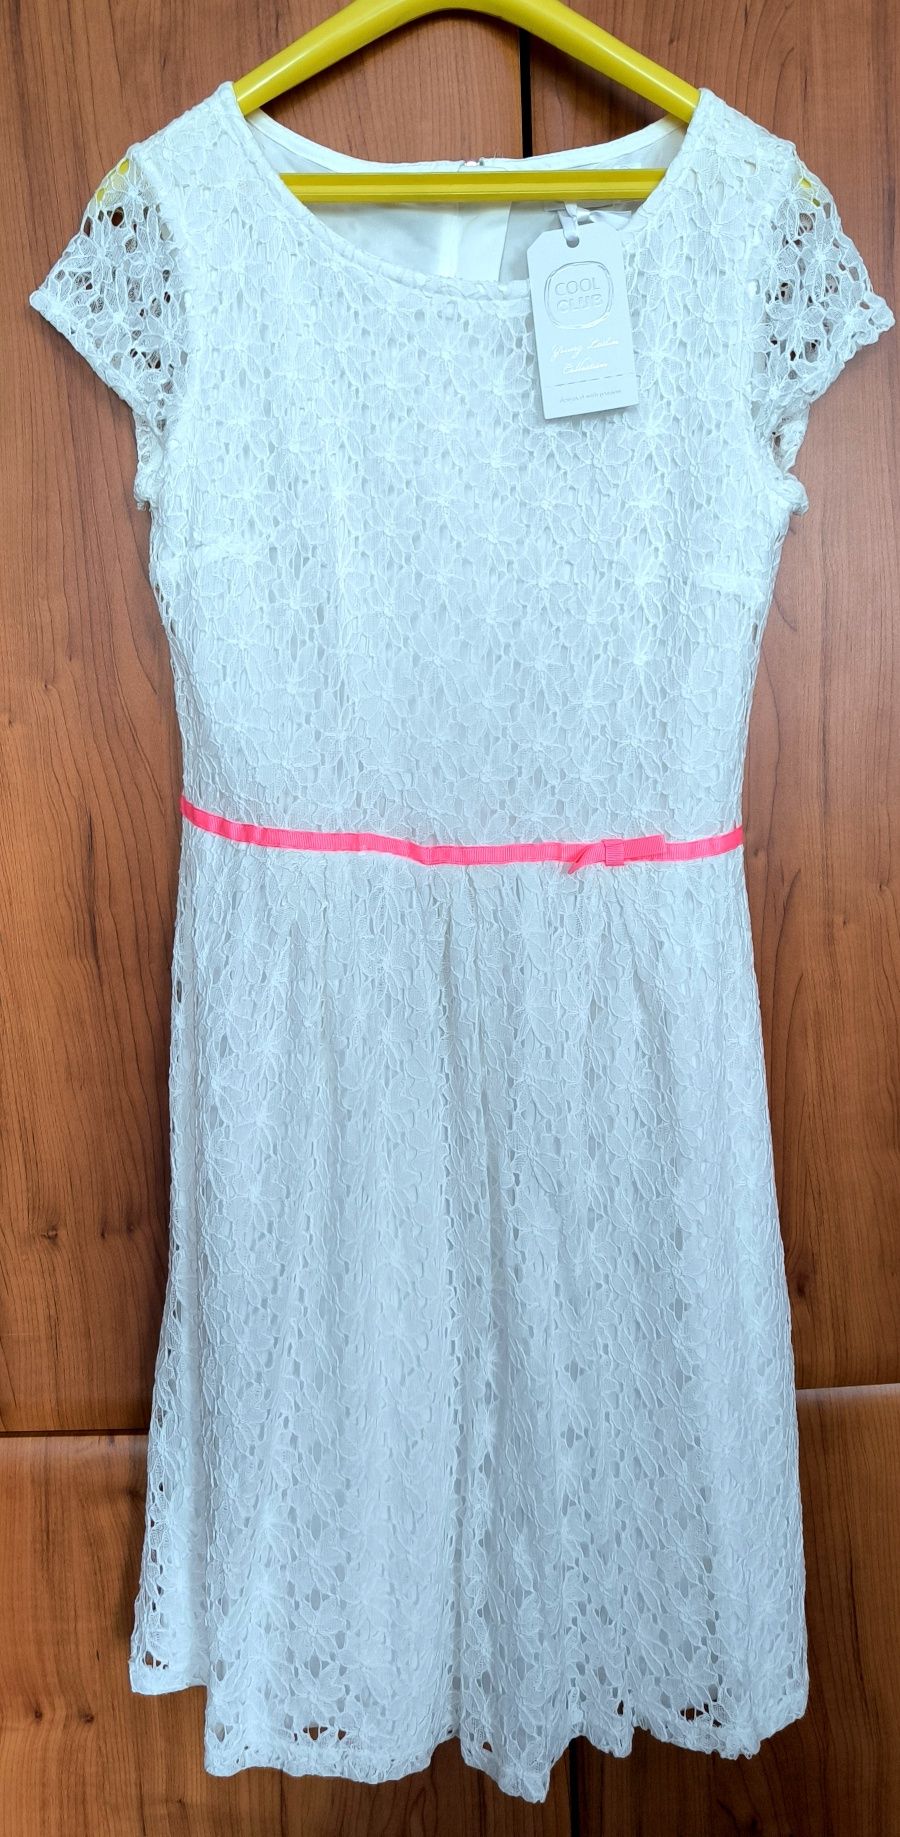 Biała sukienka marki Cool Club rozmiar 170